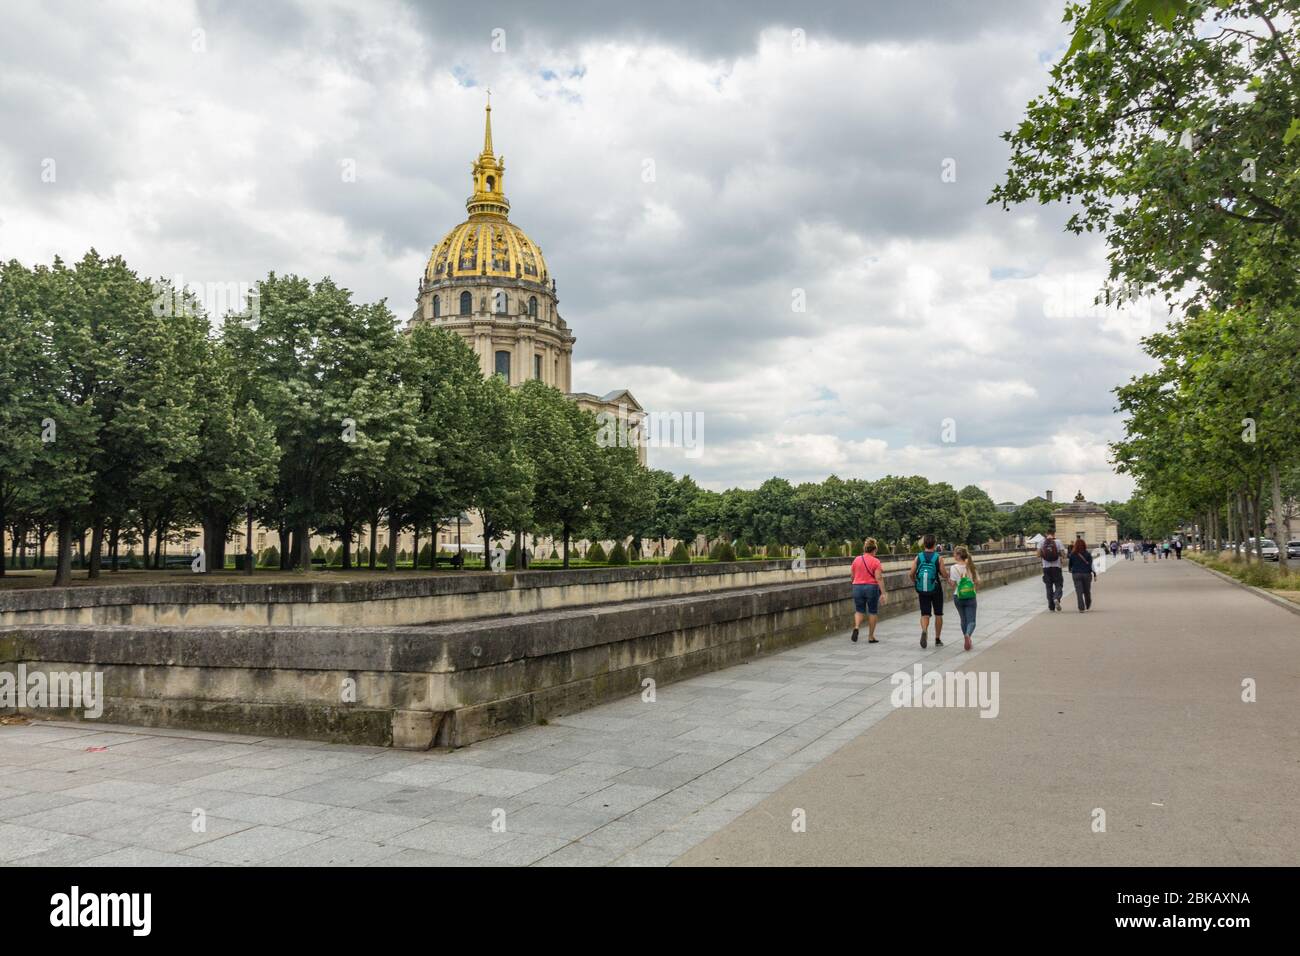 Parigi, Francia - 25 giugno 2016: Les Invalides è un complesso di musei a Parigi, il museo di storia militare della Francia, e la tomba di Napoleone Bonapar Foto Stock